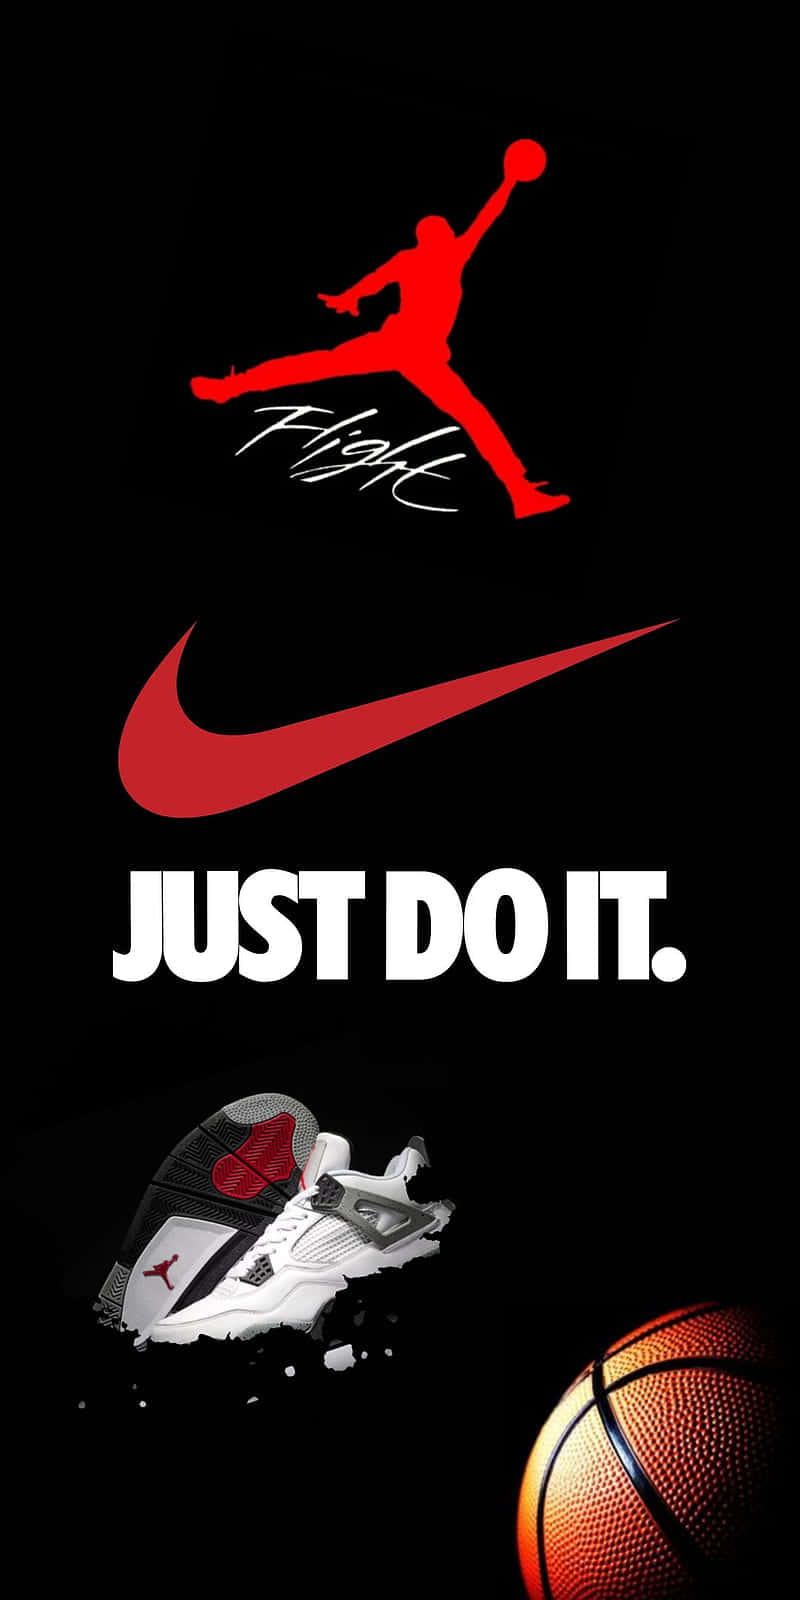 Bildein Handy Mit Dem Jordan-logo, Umrahmt Von Einem Dunklen Hintergrund. Wallpaper